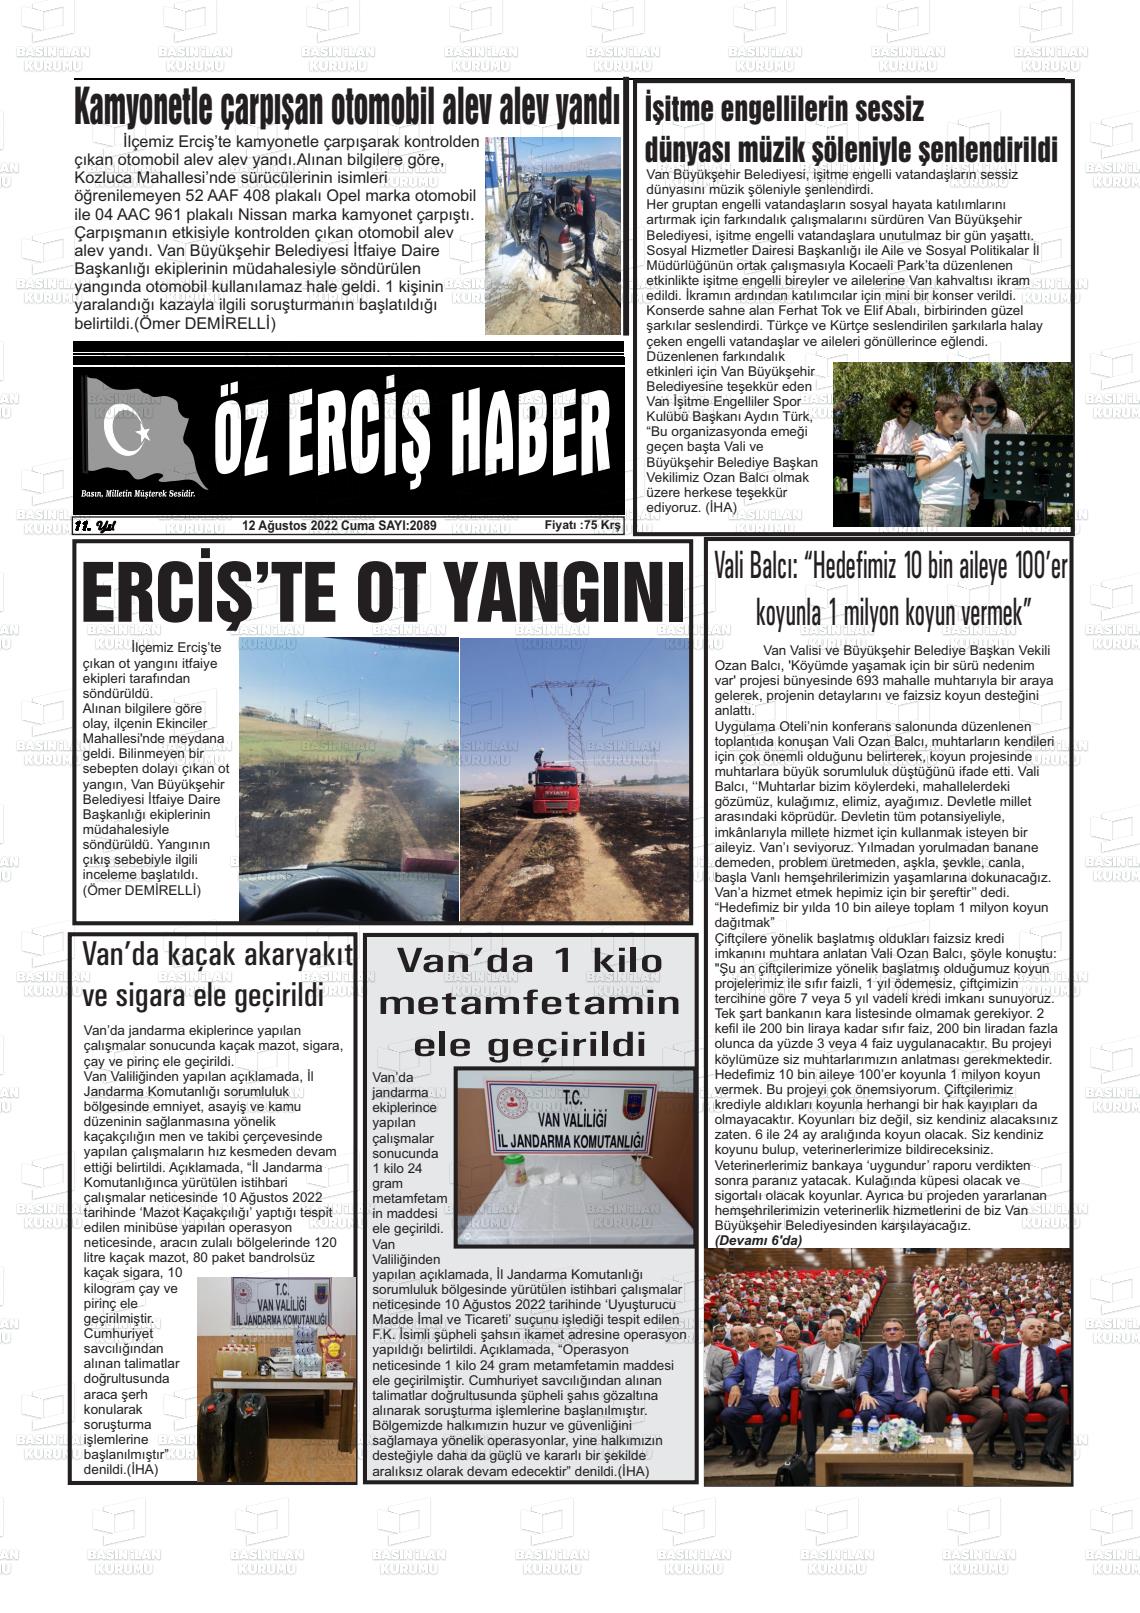 12 Ağustos 2022 Öz Erciş Haber Gazete Manşeti